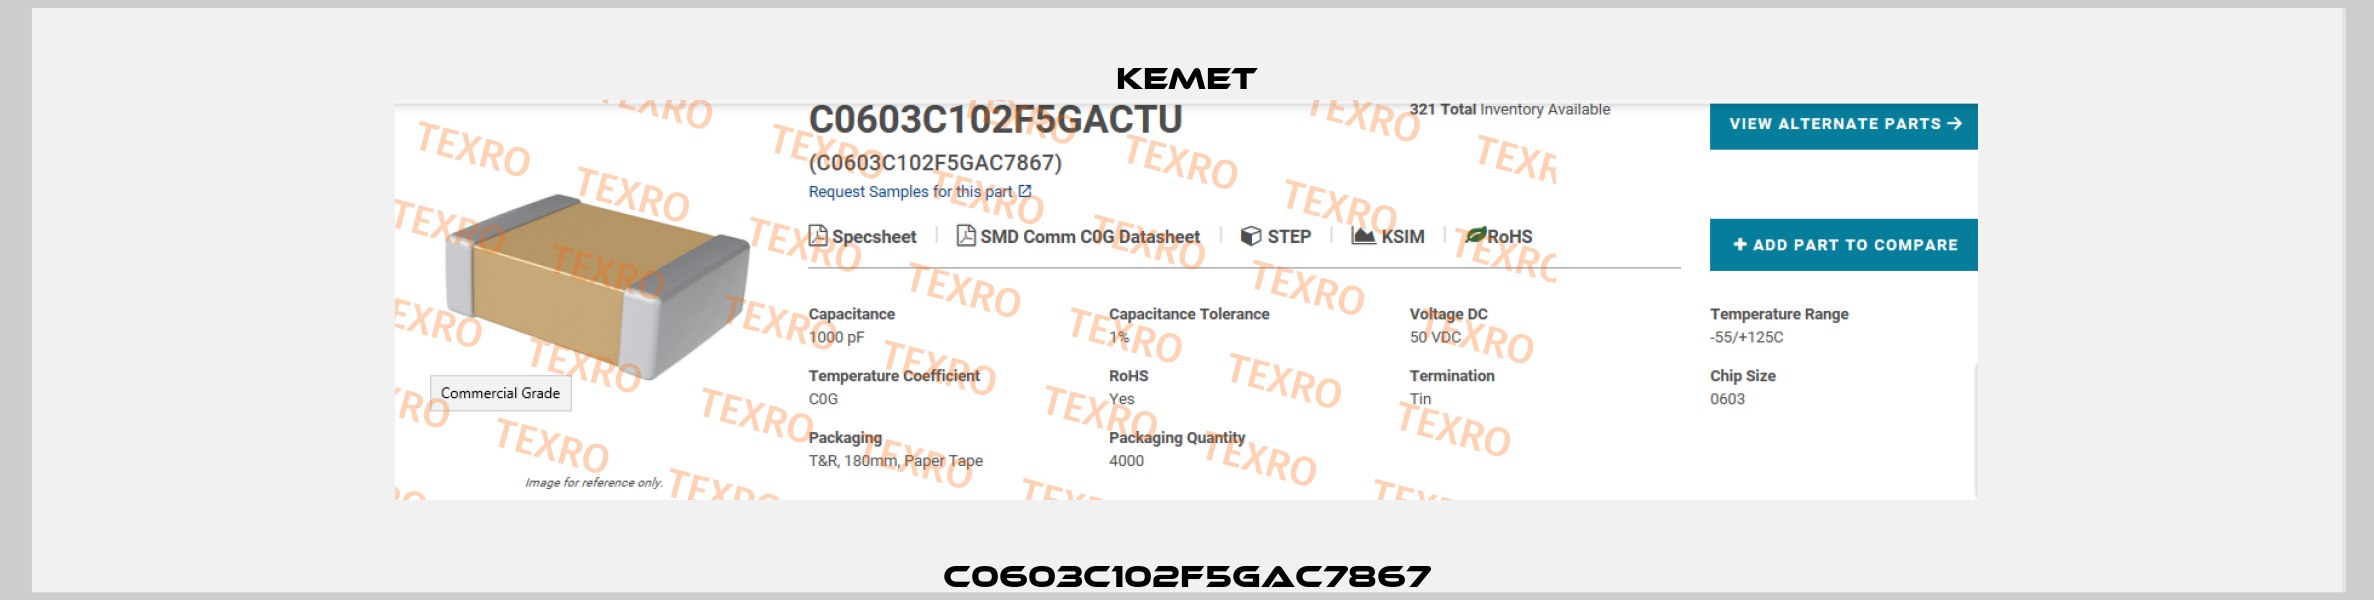 C0603C102F5GAC7867 Kemet